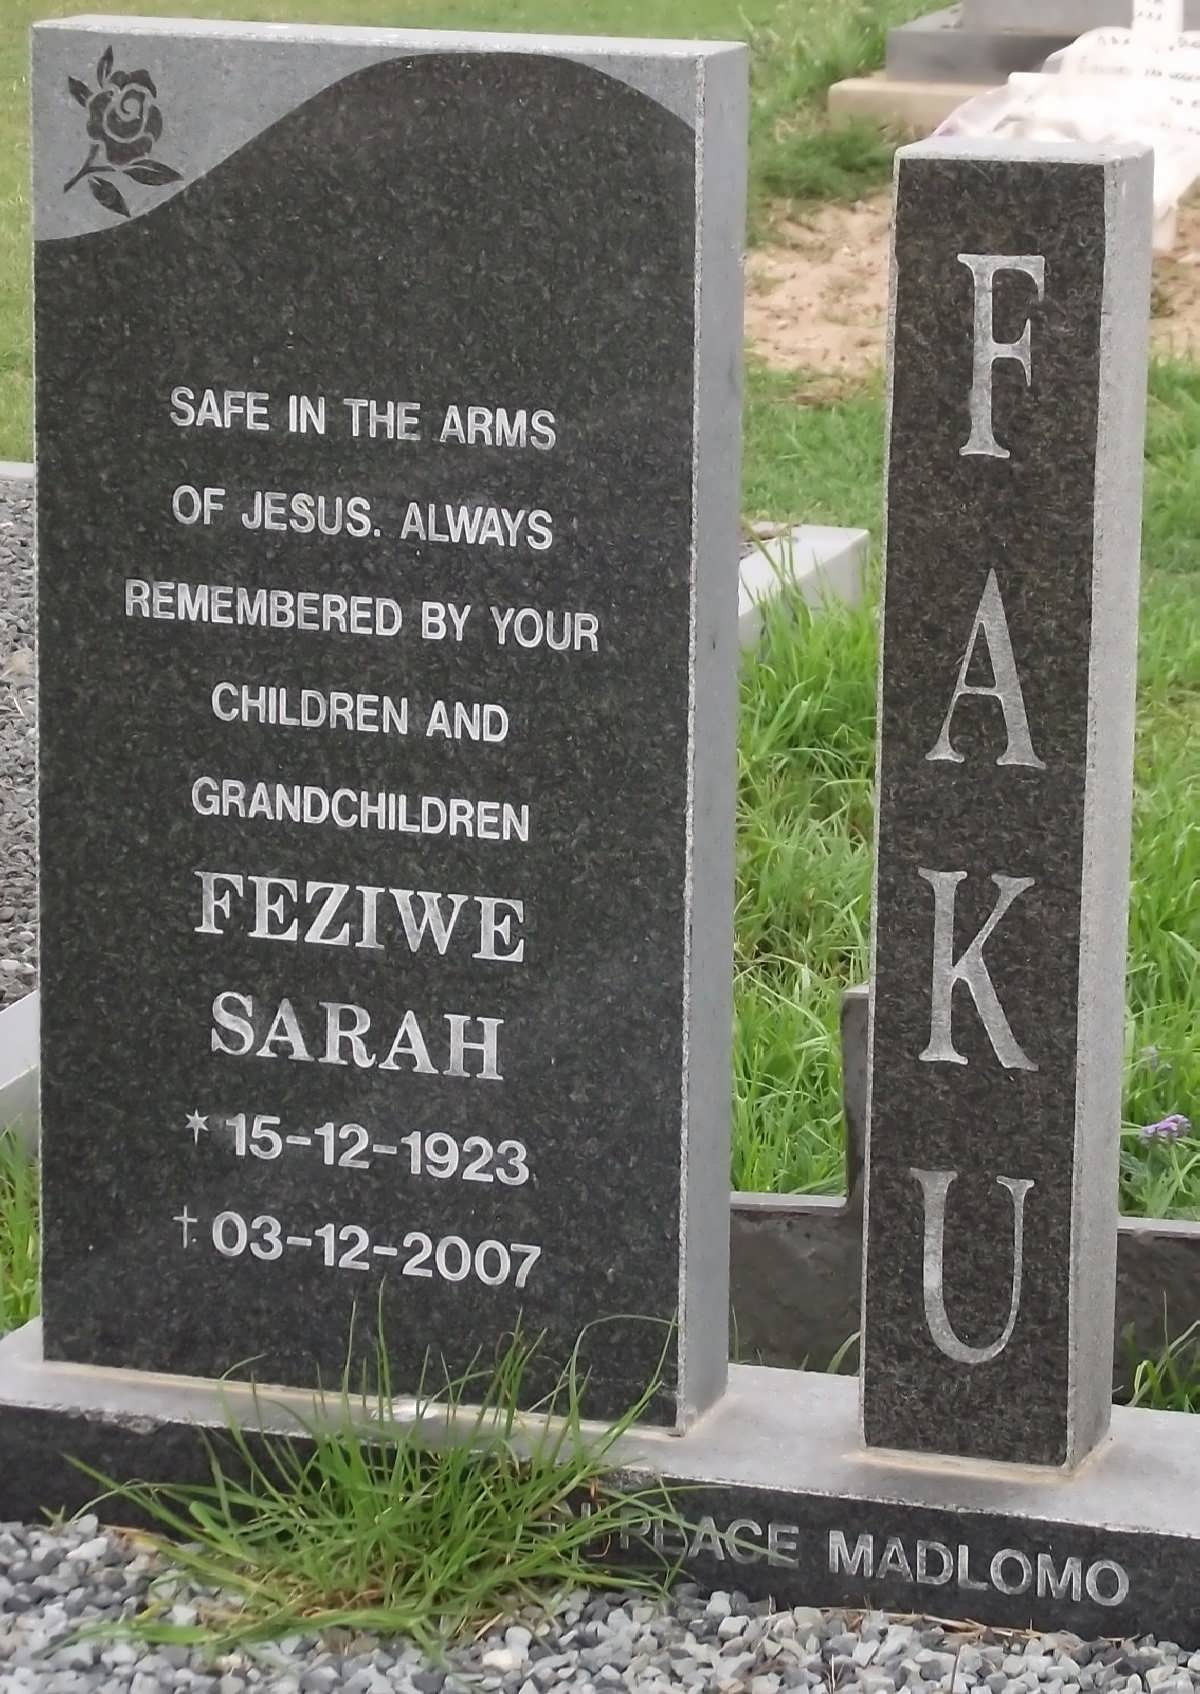 FAKU Feziwe Sarah 1923-2007